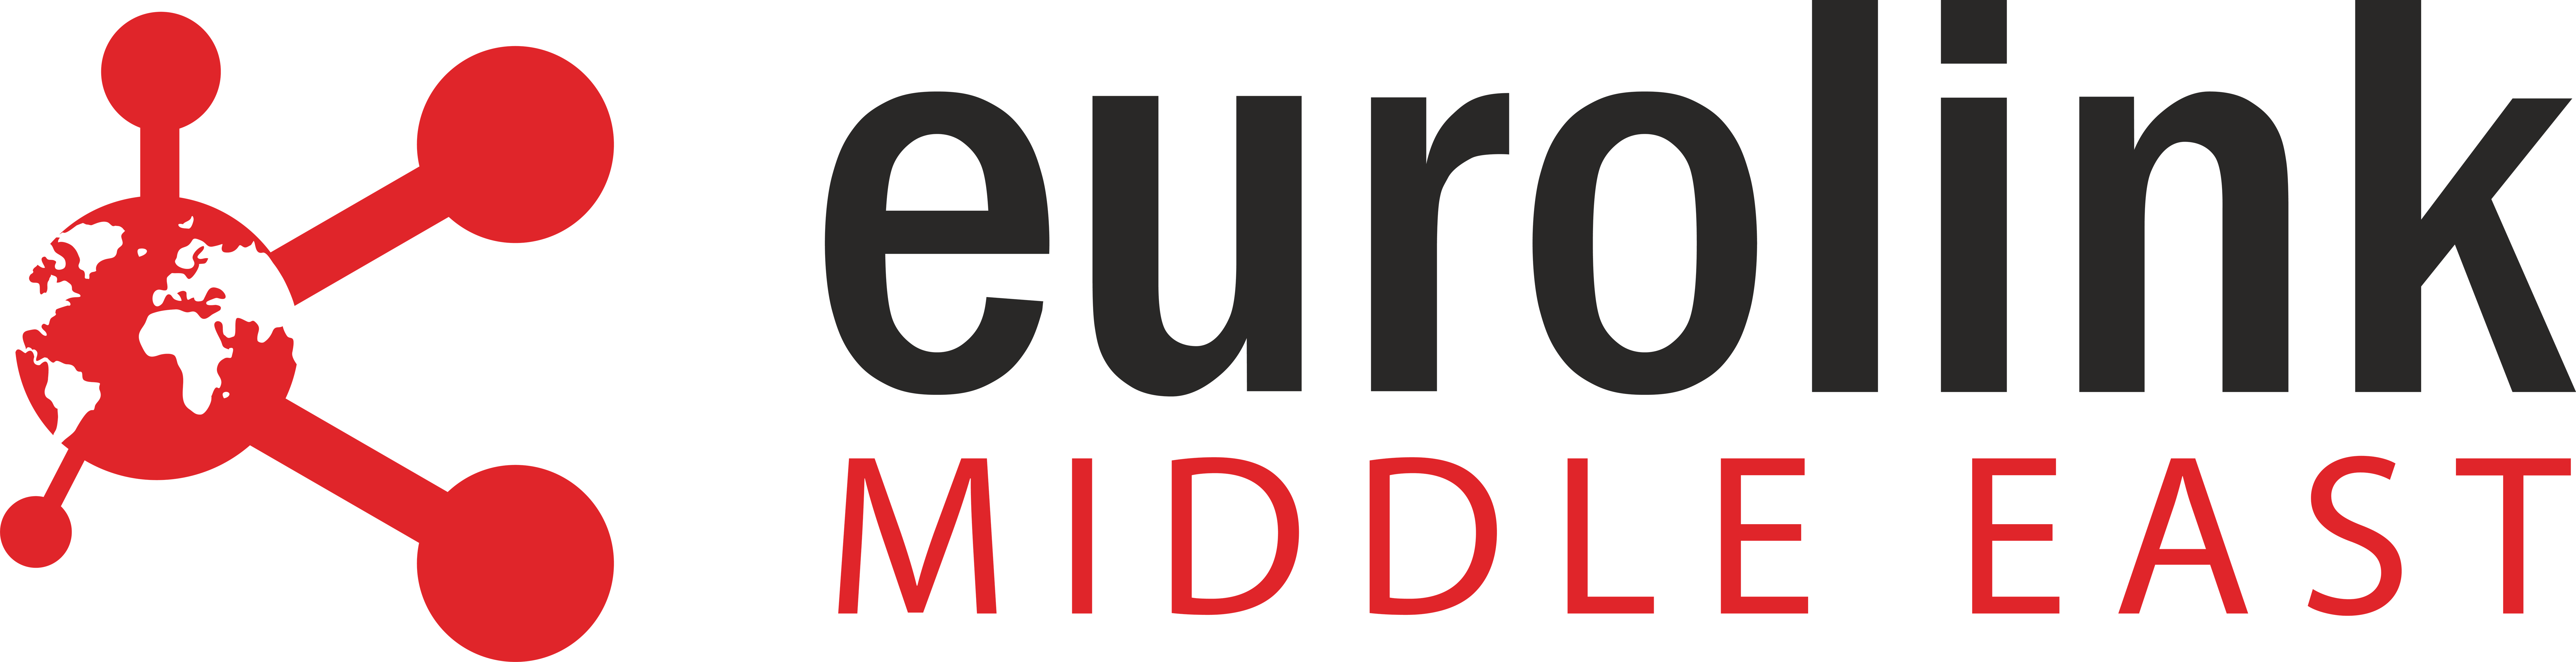 Eurolink Middle East Logo